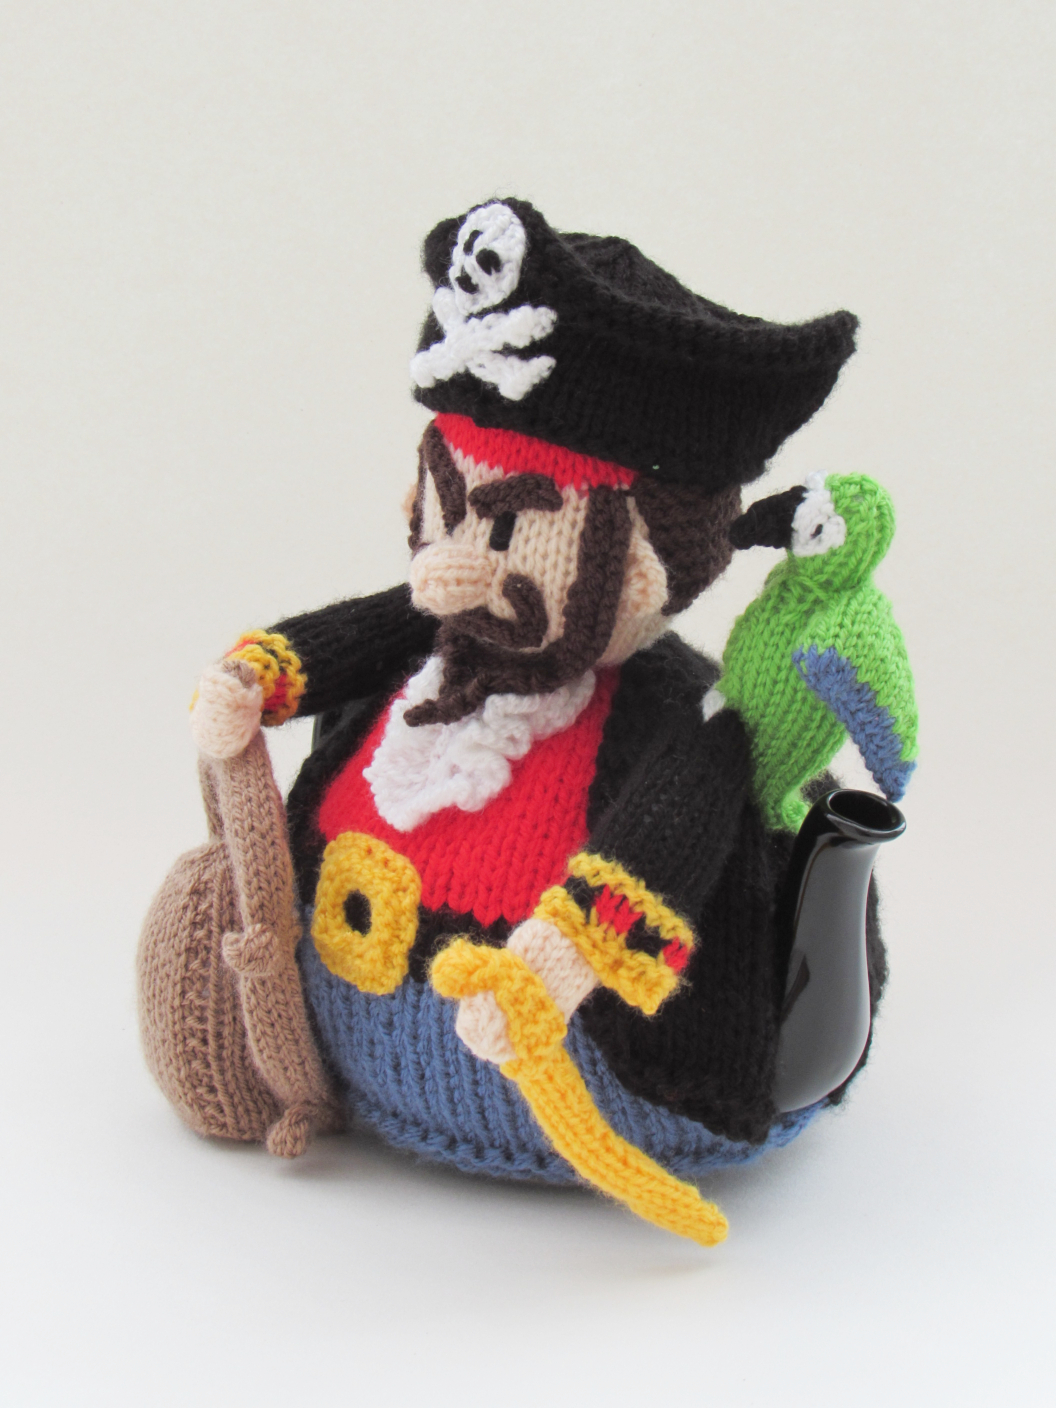 Pirate knitting pattern